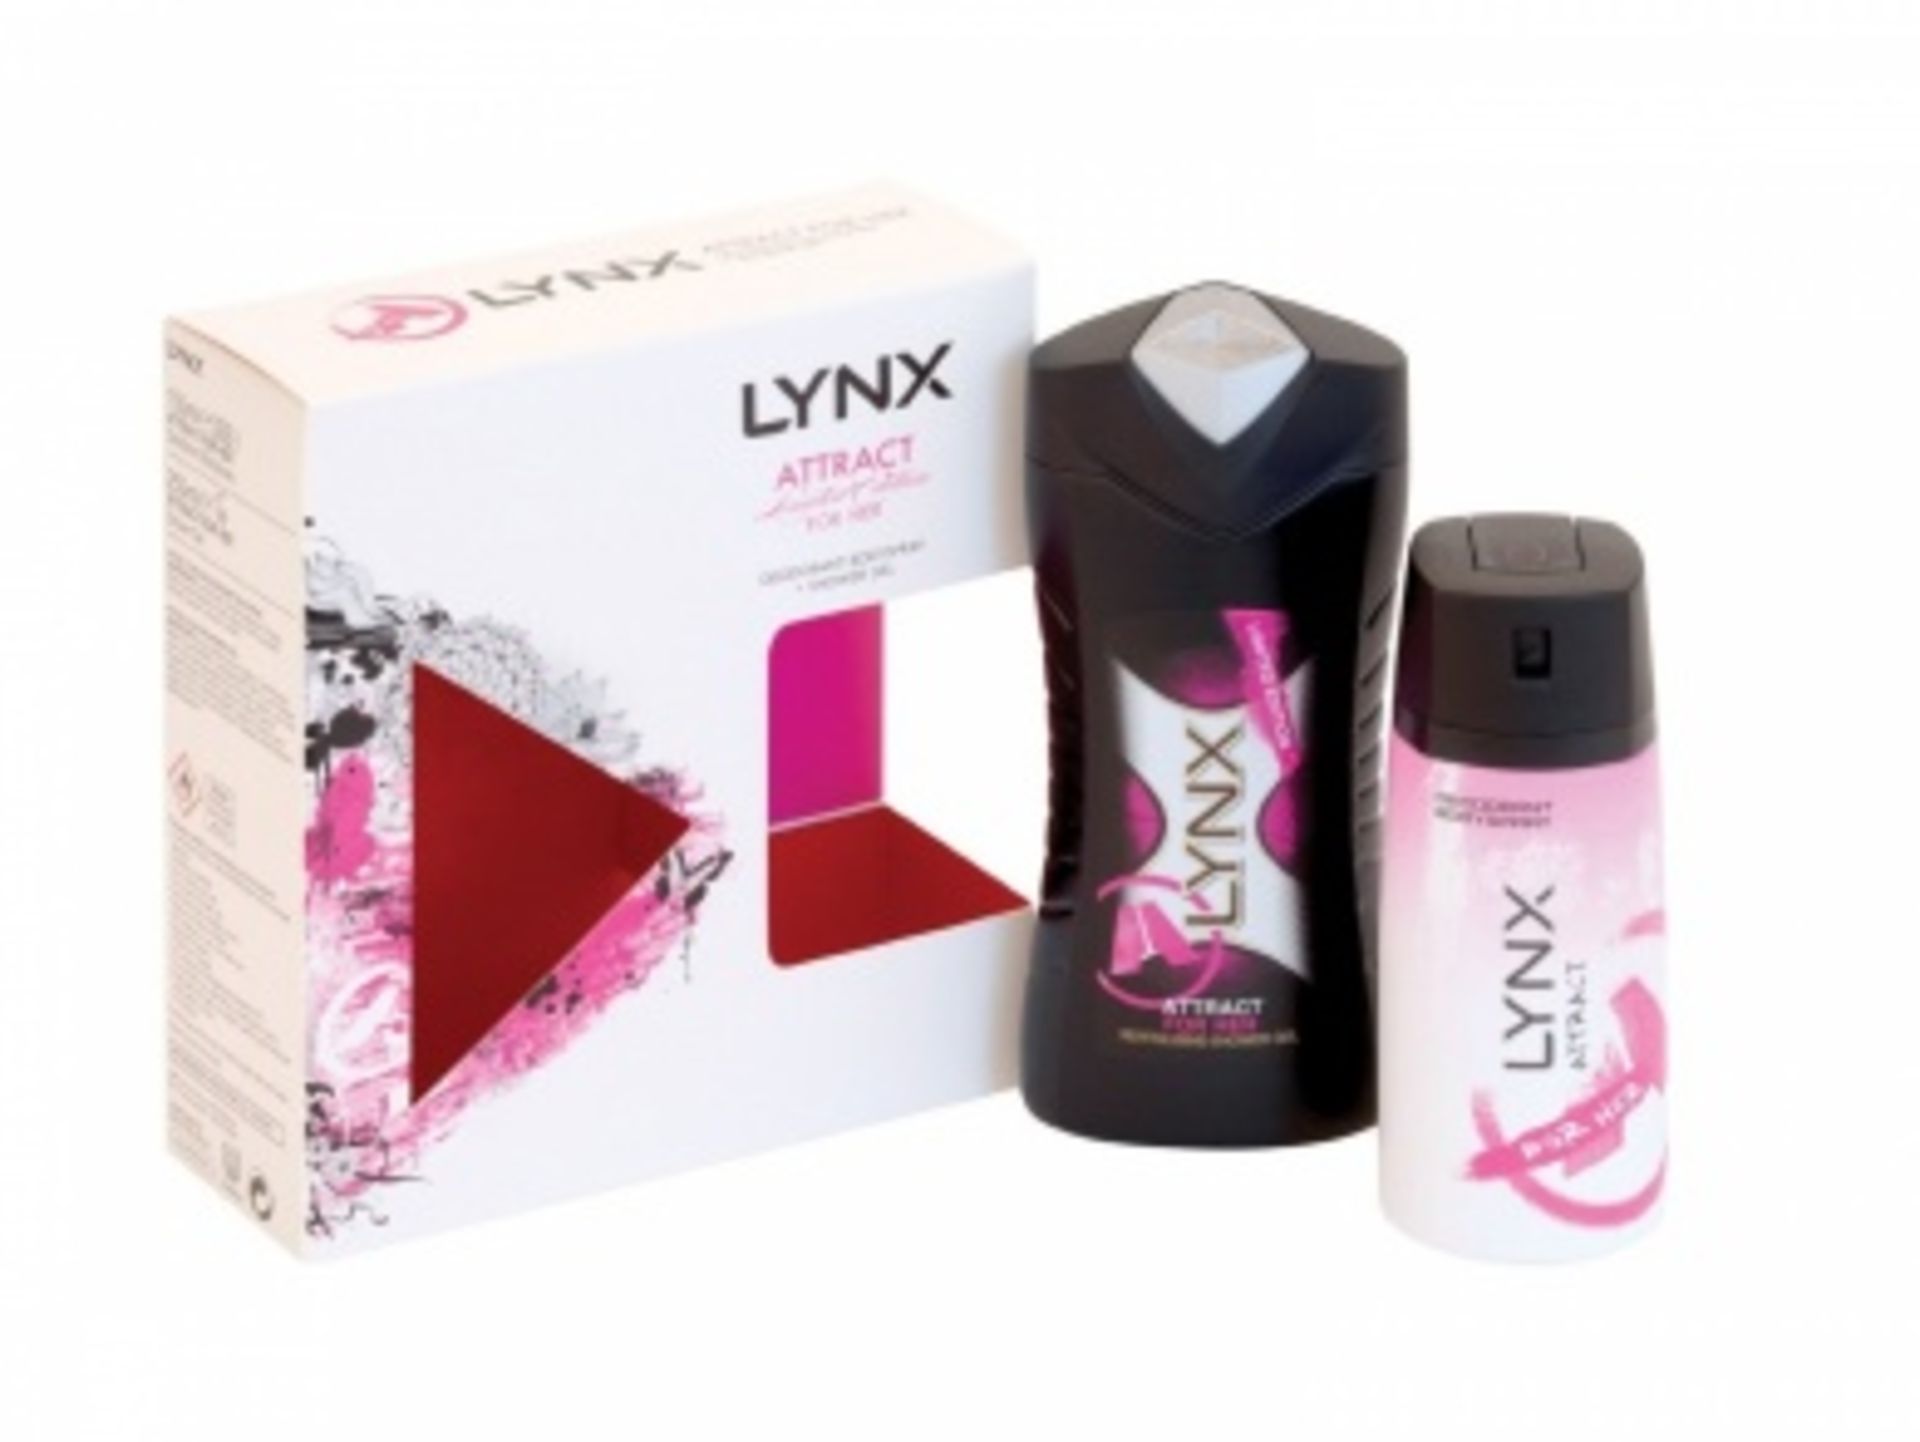 V Grade A Lynx Attract gift set shower gel&Deodorant